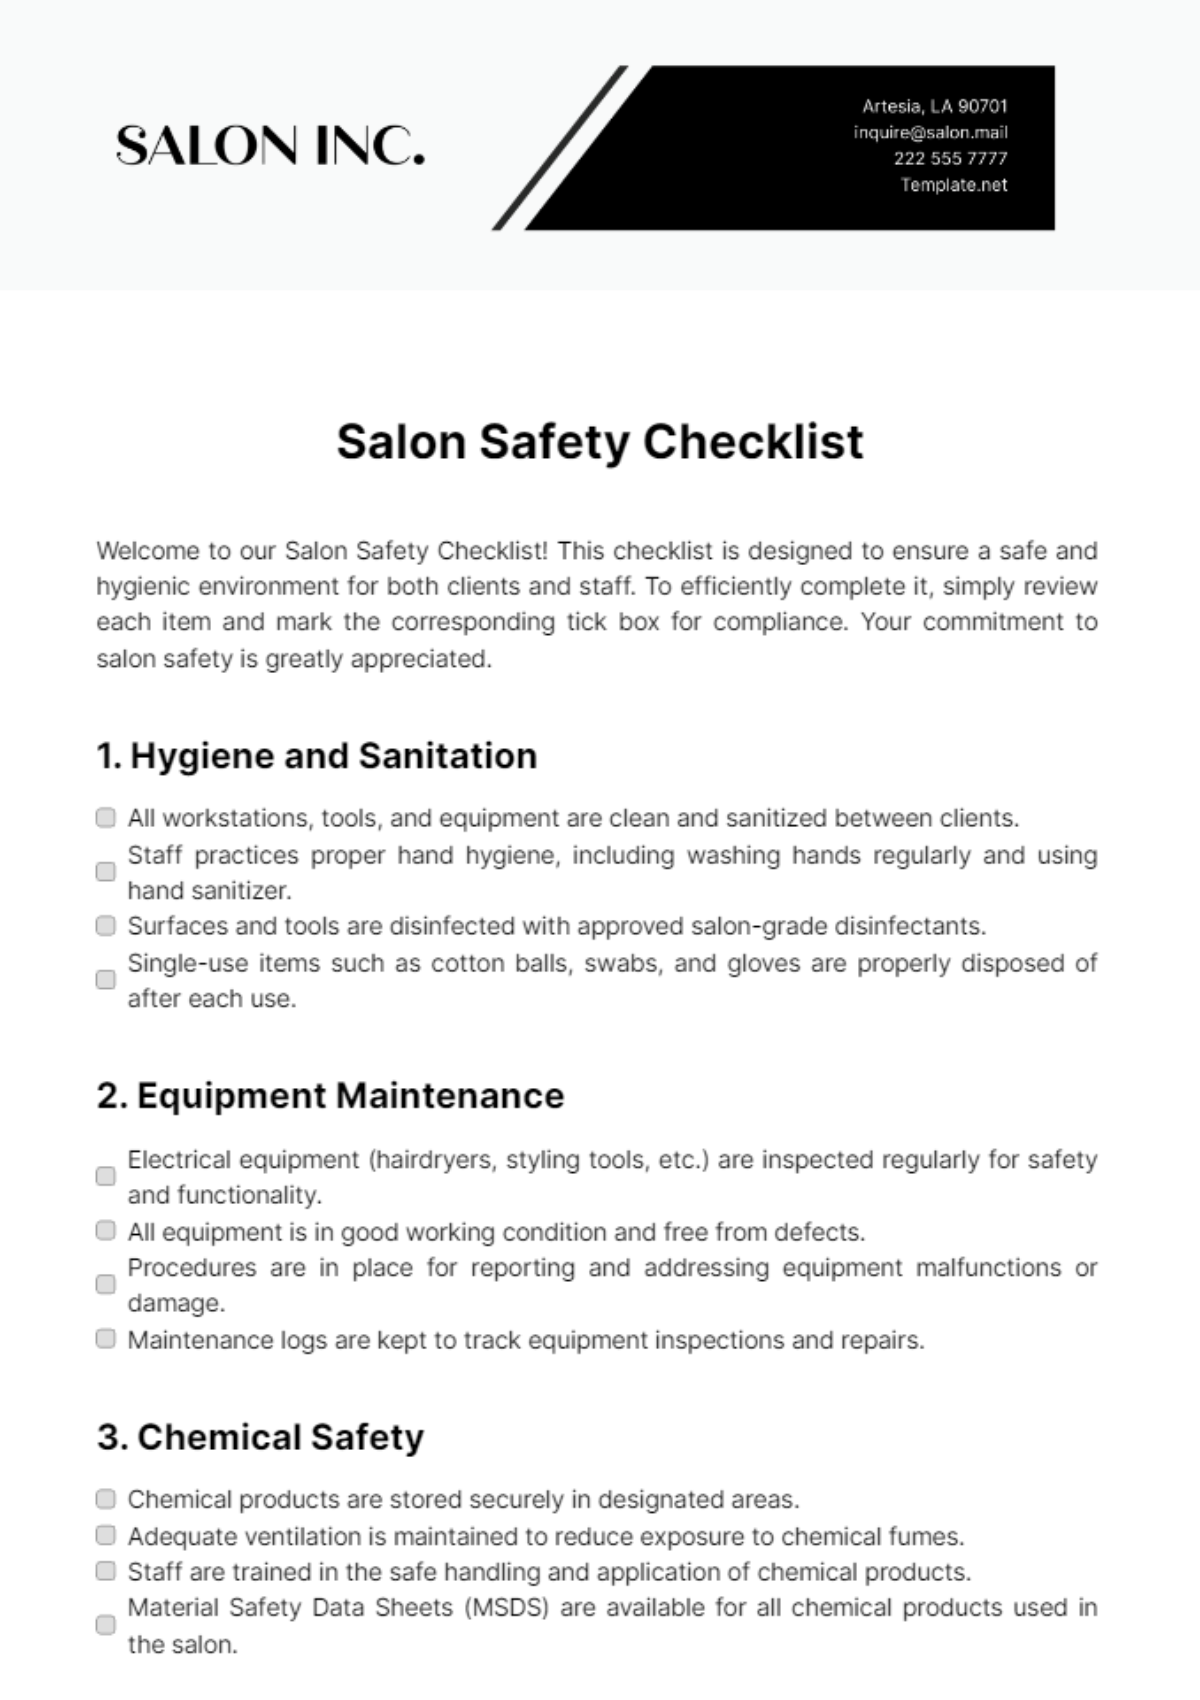 Salon Safety Checklist Template